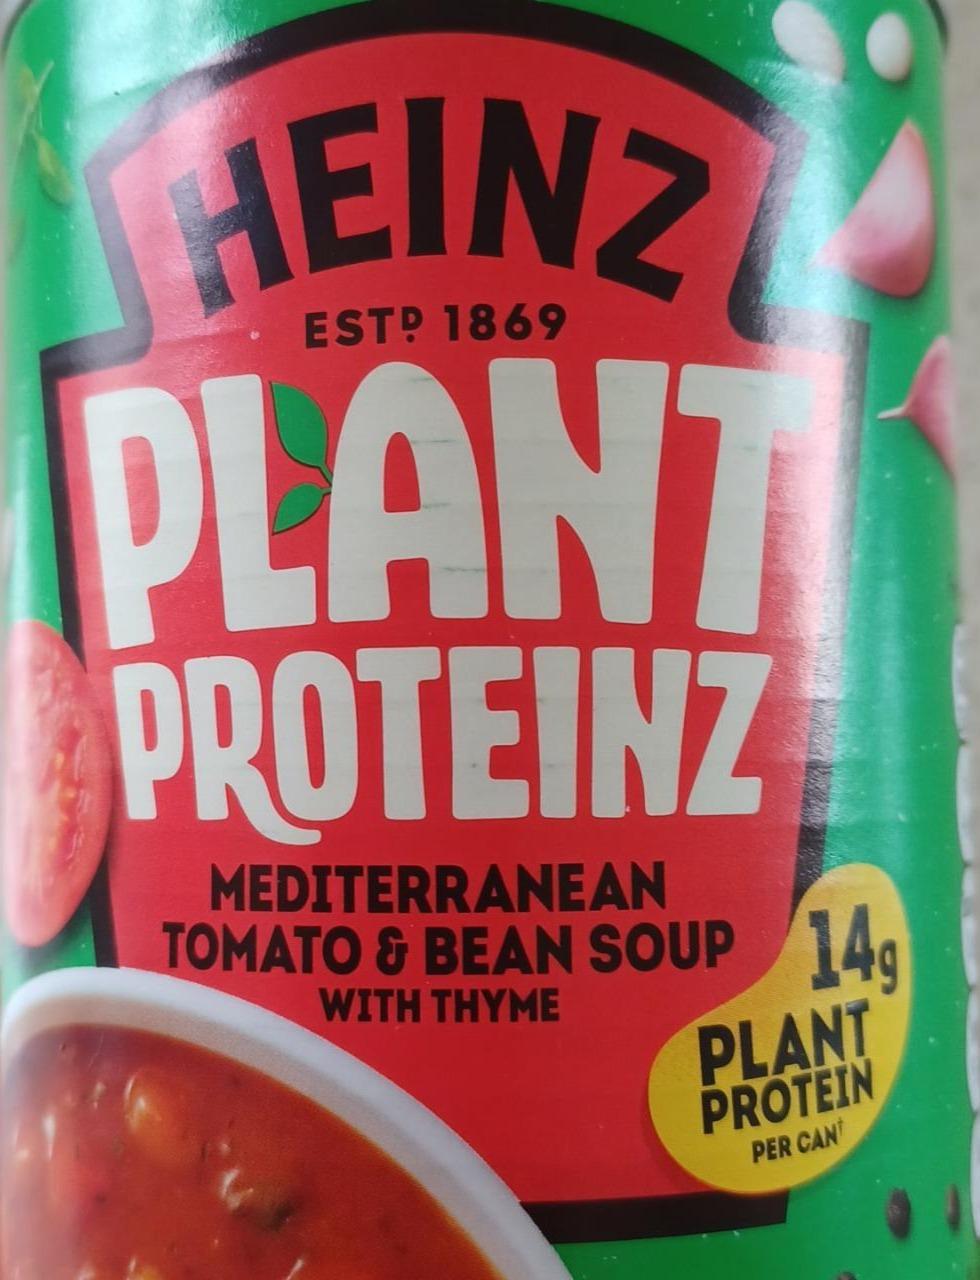 Fotografie - Heinz Plant Proteinz Mediterranean tomato & bean soup with thyme